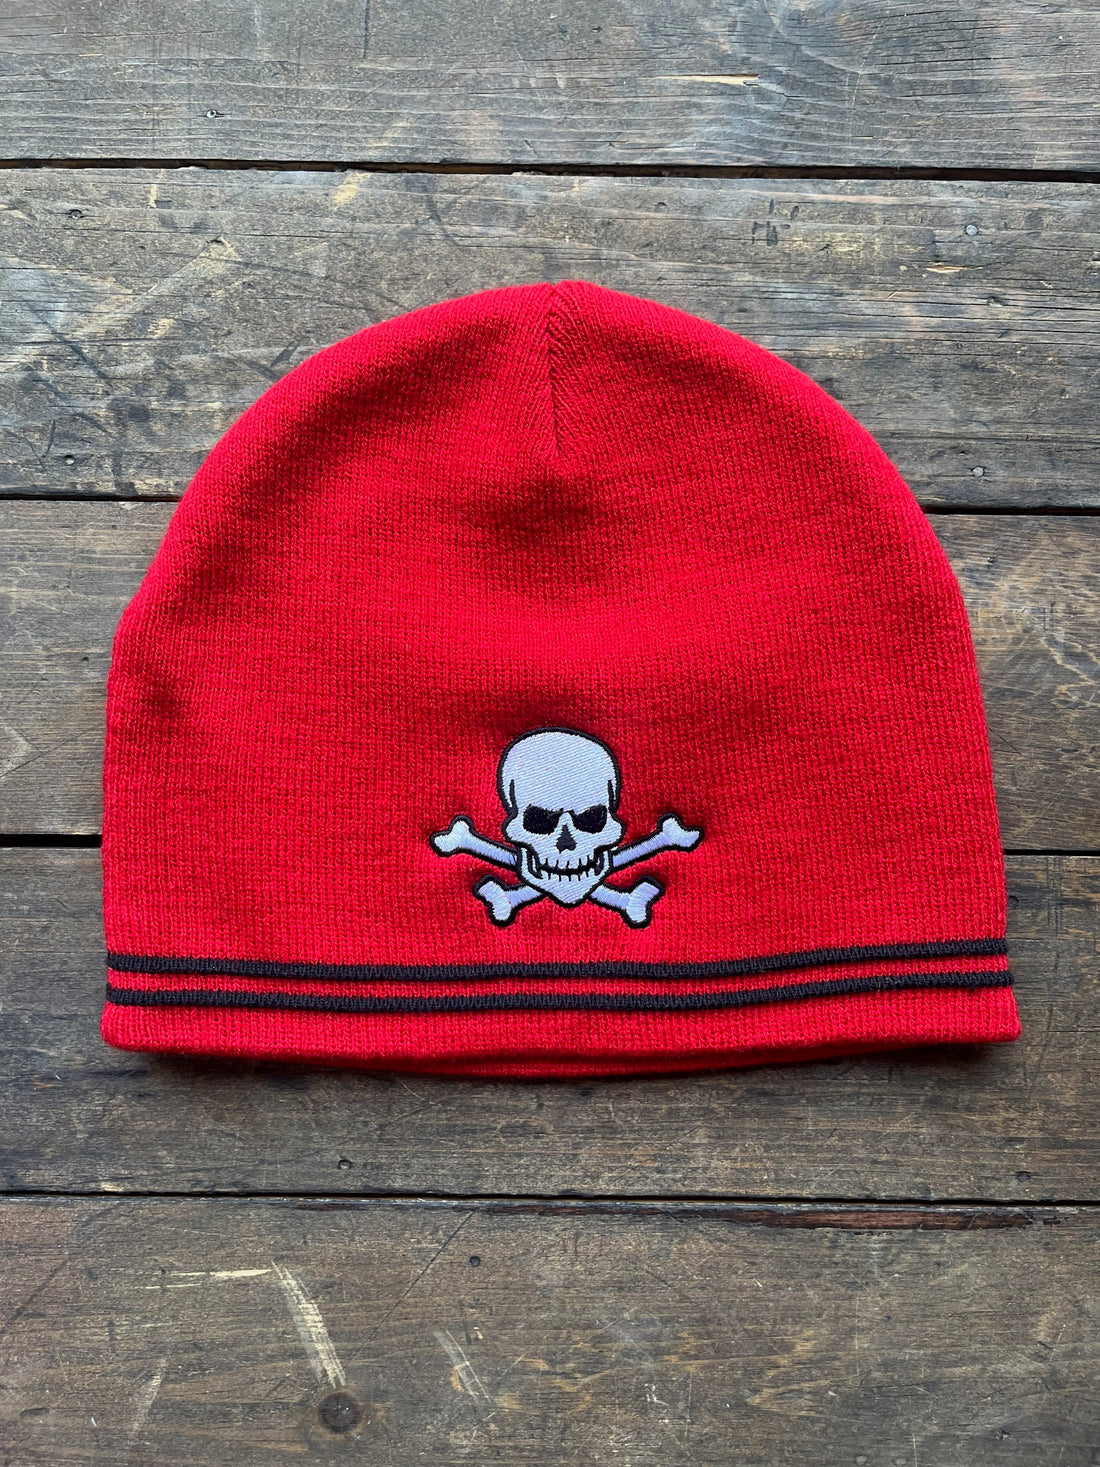 Pirate Knit Cap